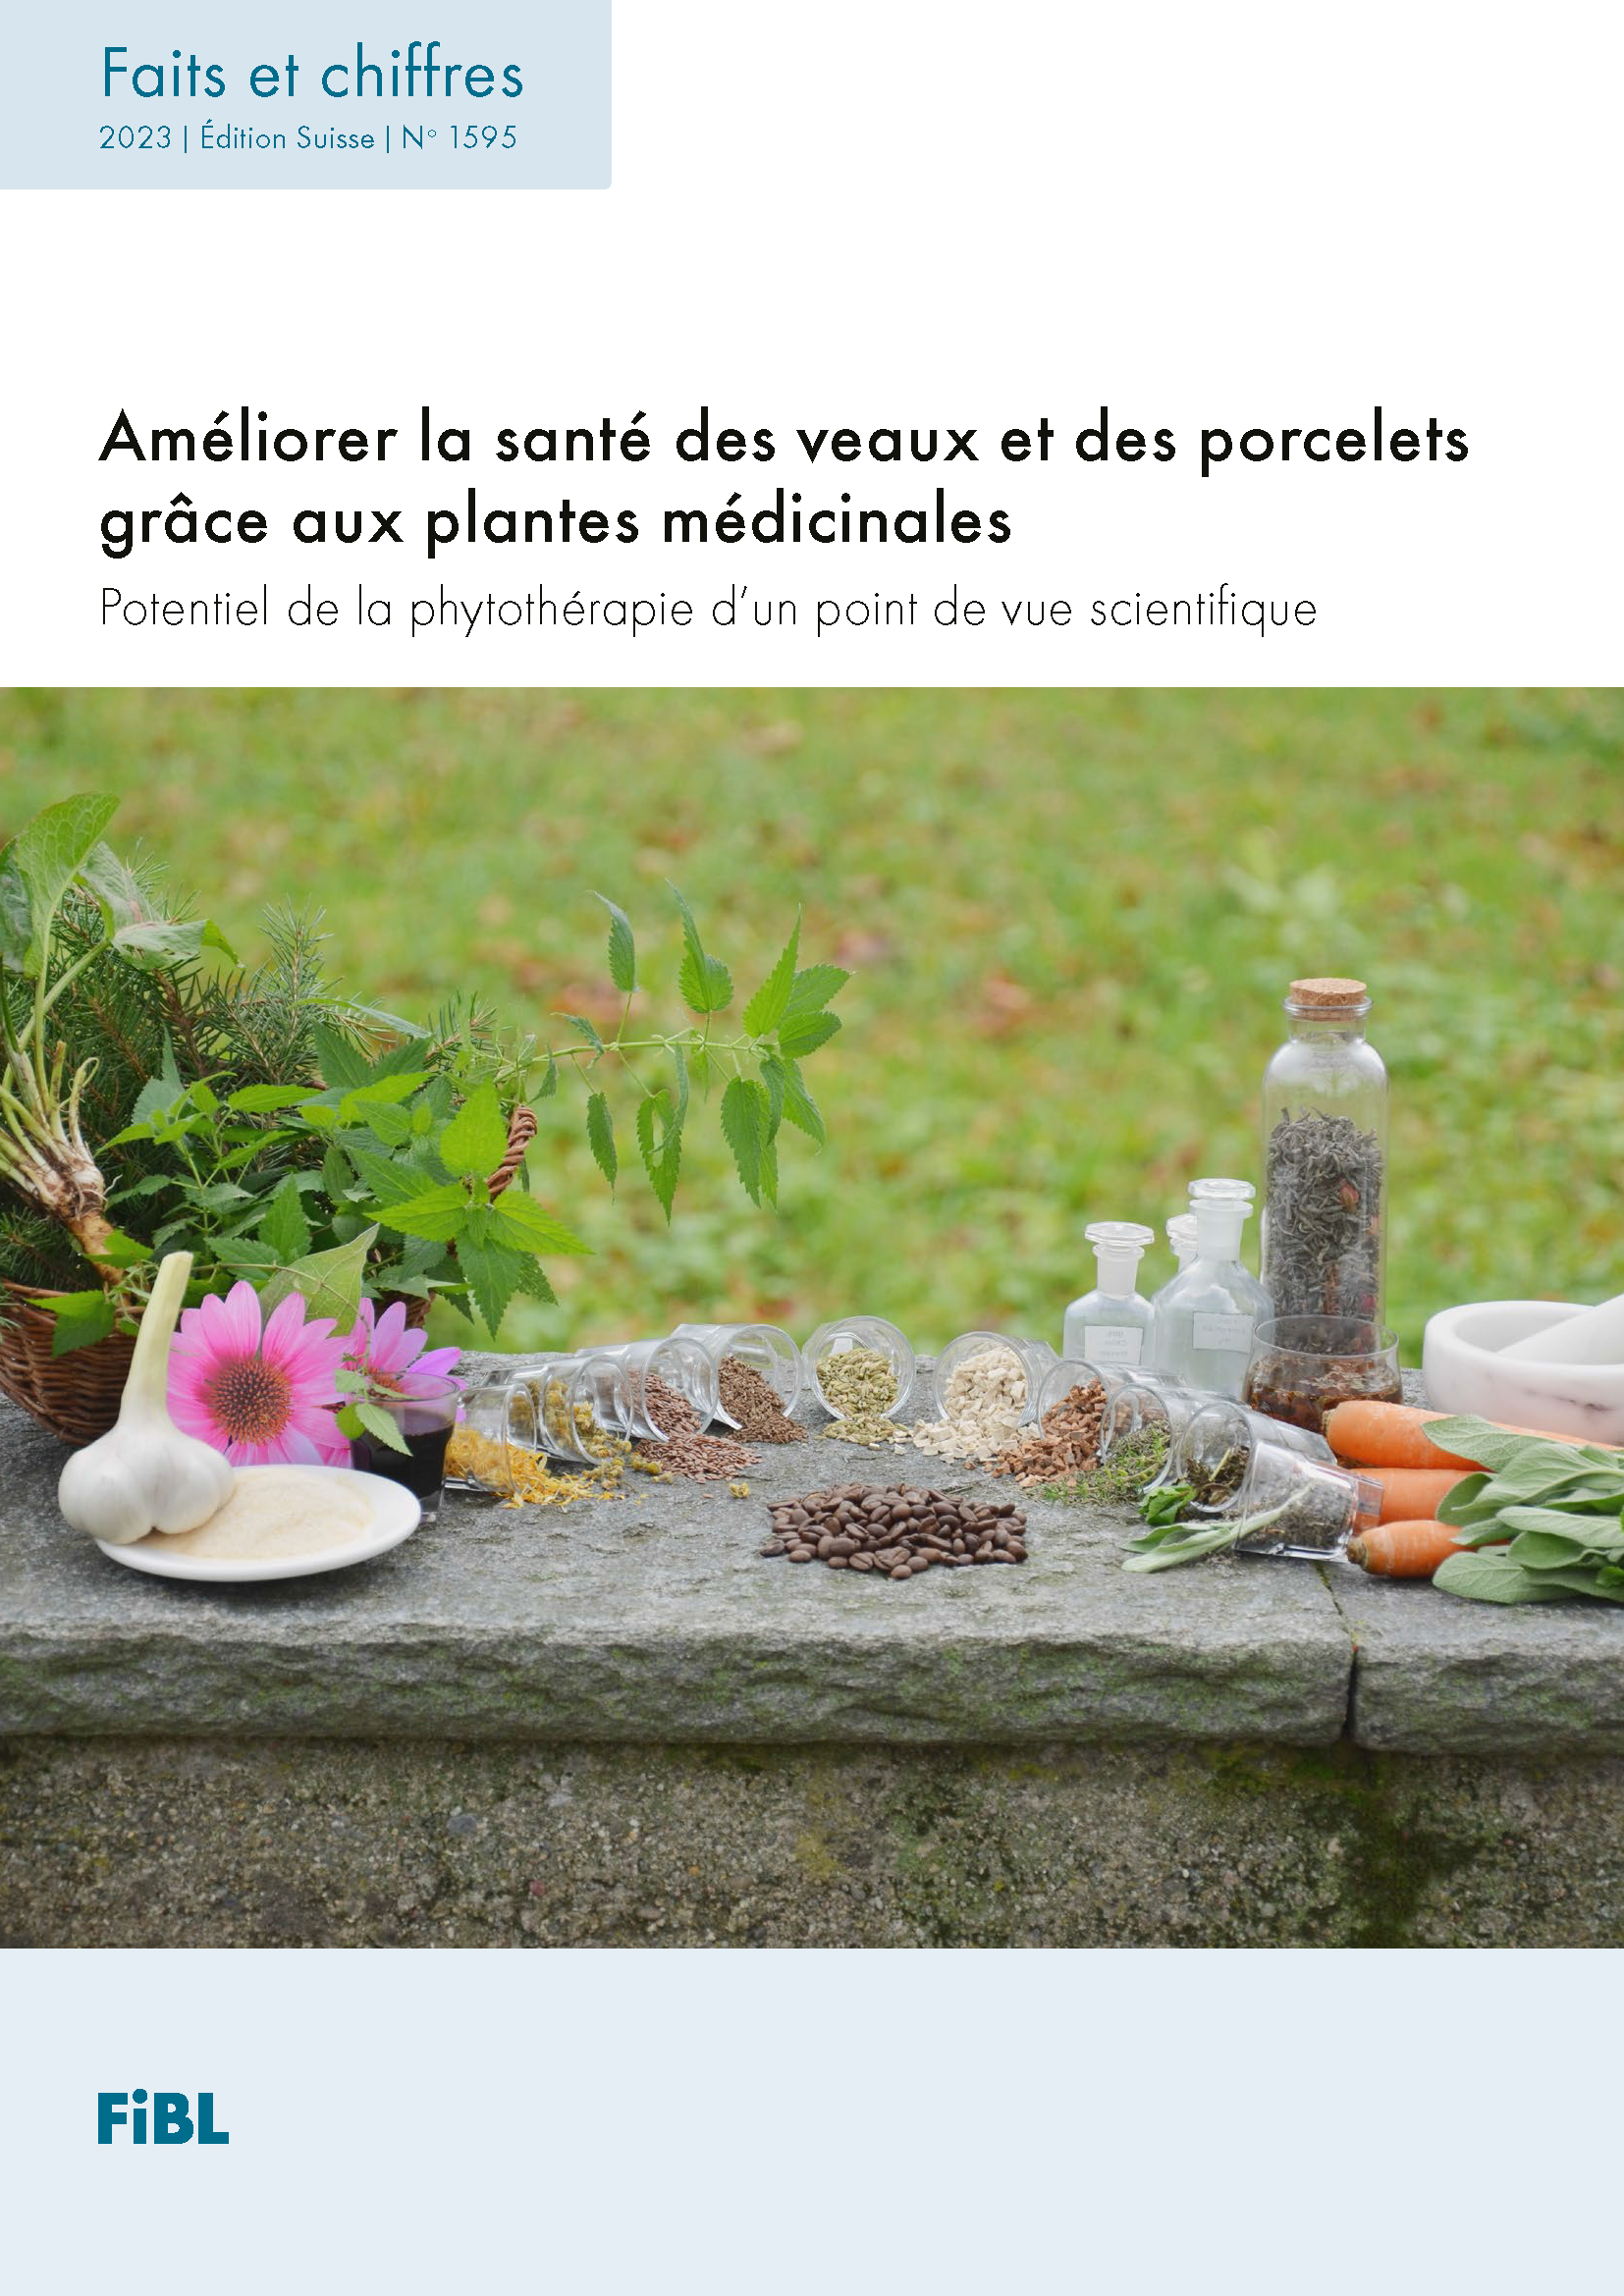 Améliorer la santé des veaux et des porcelets grâce aux plantes médicinales